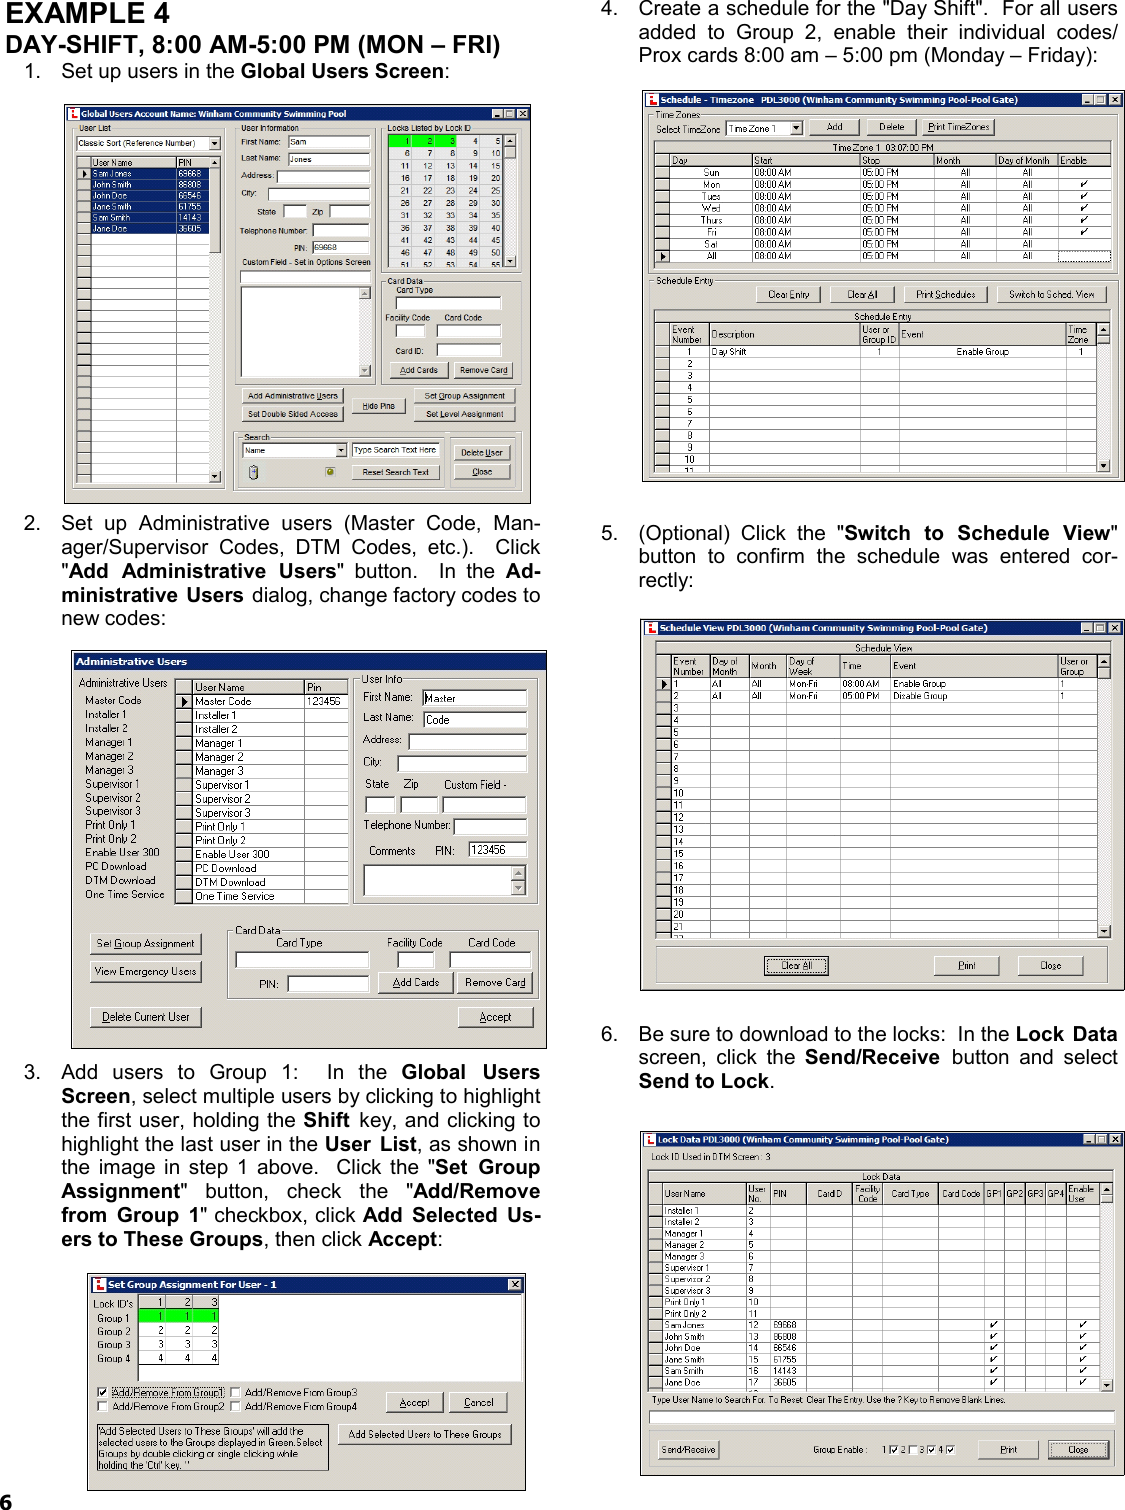 Page 6 of 8 - Alarm Lock DL-Wind_4.1x_TimeZoneSchedScen_WI1633A.05_ DL-Windows Timezone Scheduling Scenario Examples (v4.1x) DL-Wind 4.1x Time Zone Sched Scen WI1633A.05